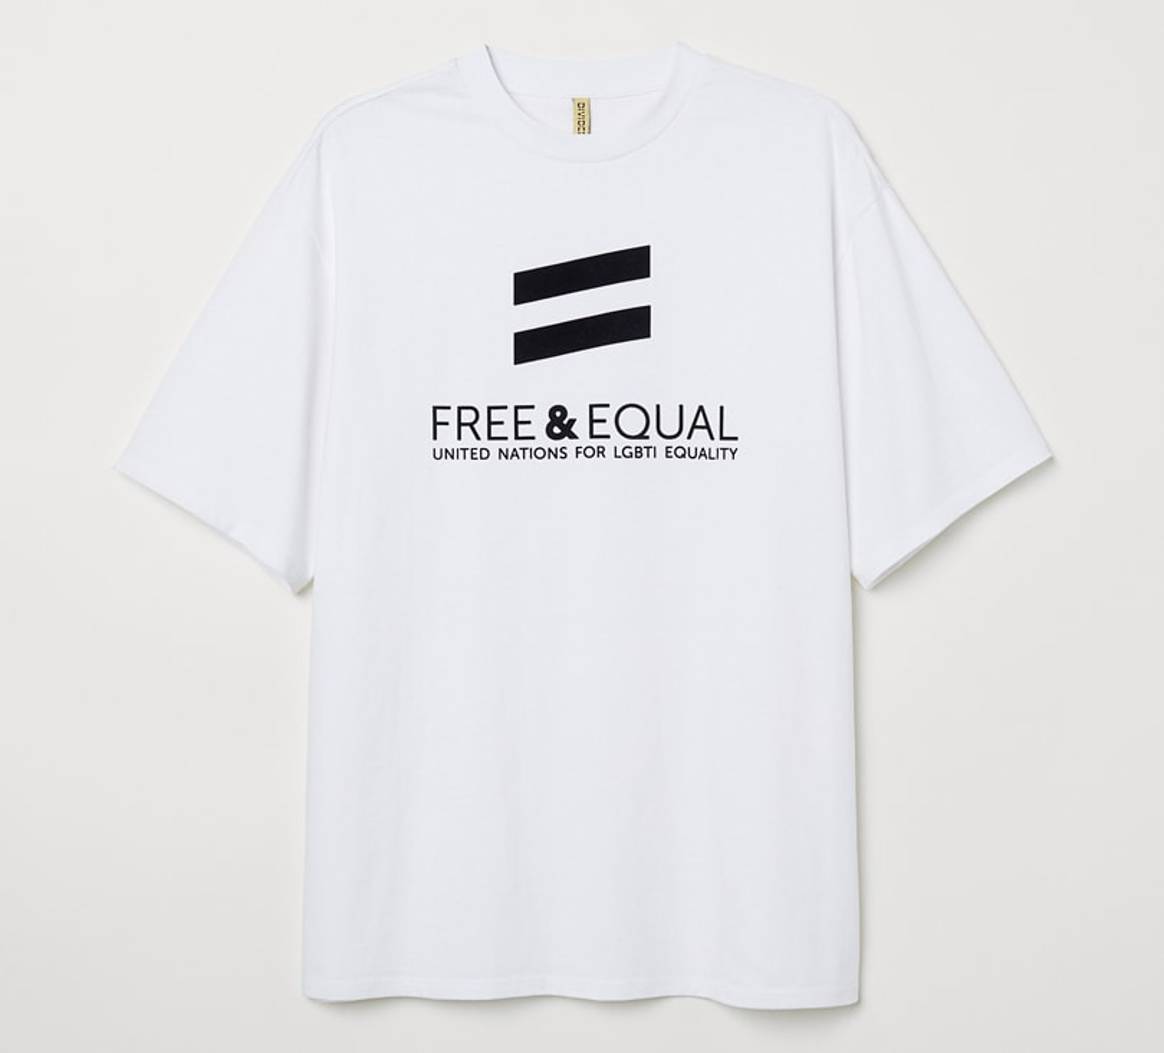 H&M soutient la communauté LGBT avec sa collection “Love for All”